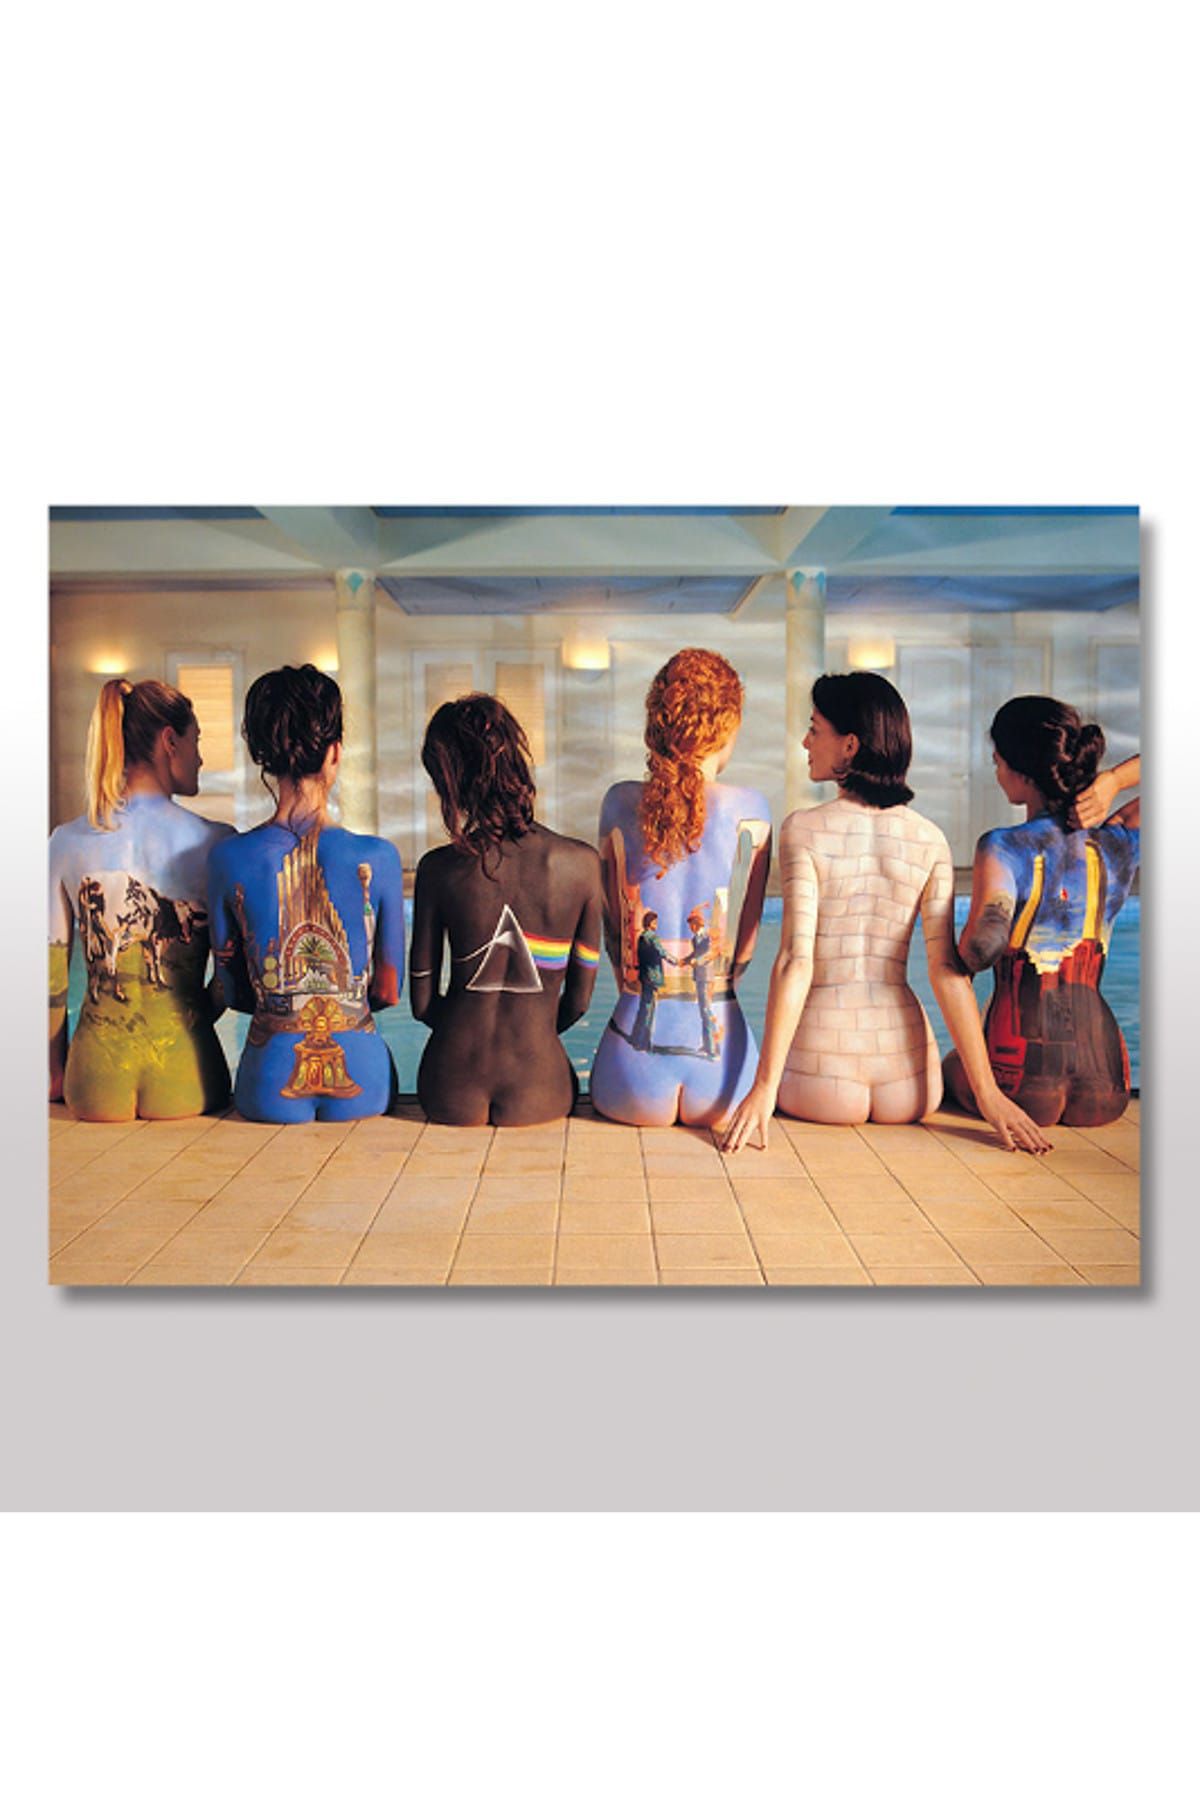 Cakatablo 50cmX70cm Ahşap Tablo Pink Floyd Albüm Kapakları Ve Kızlar